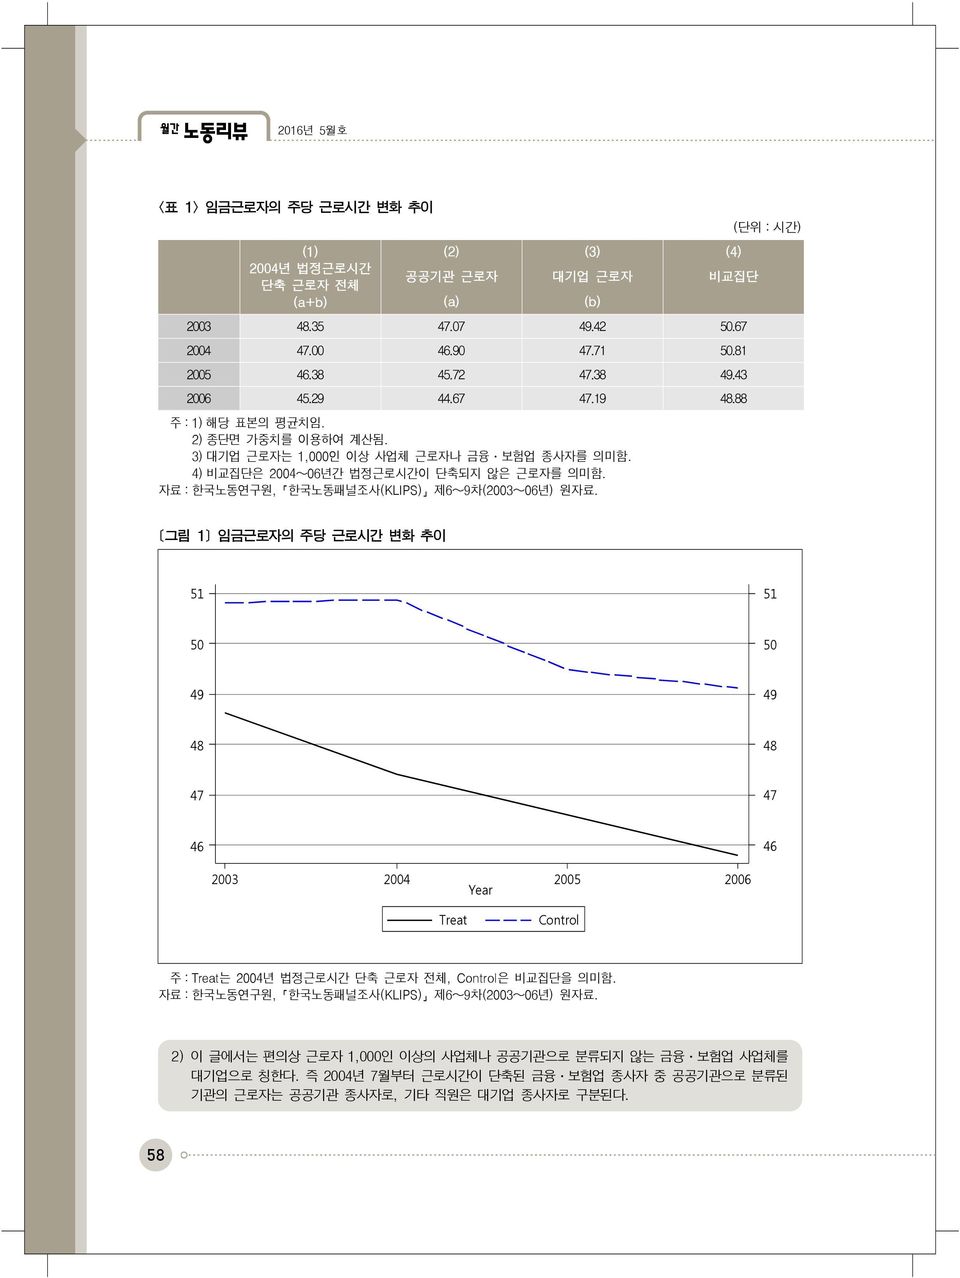 자료 : 한국노동연구원, 한국노동패널조사(KLIPS) 제6 9차(2003 06년) 원자료.